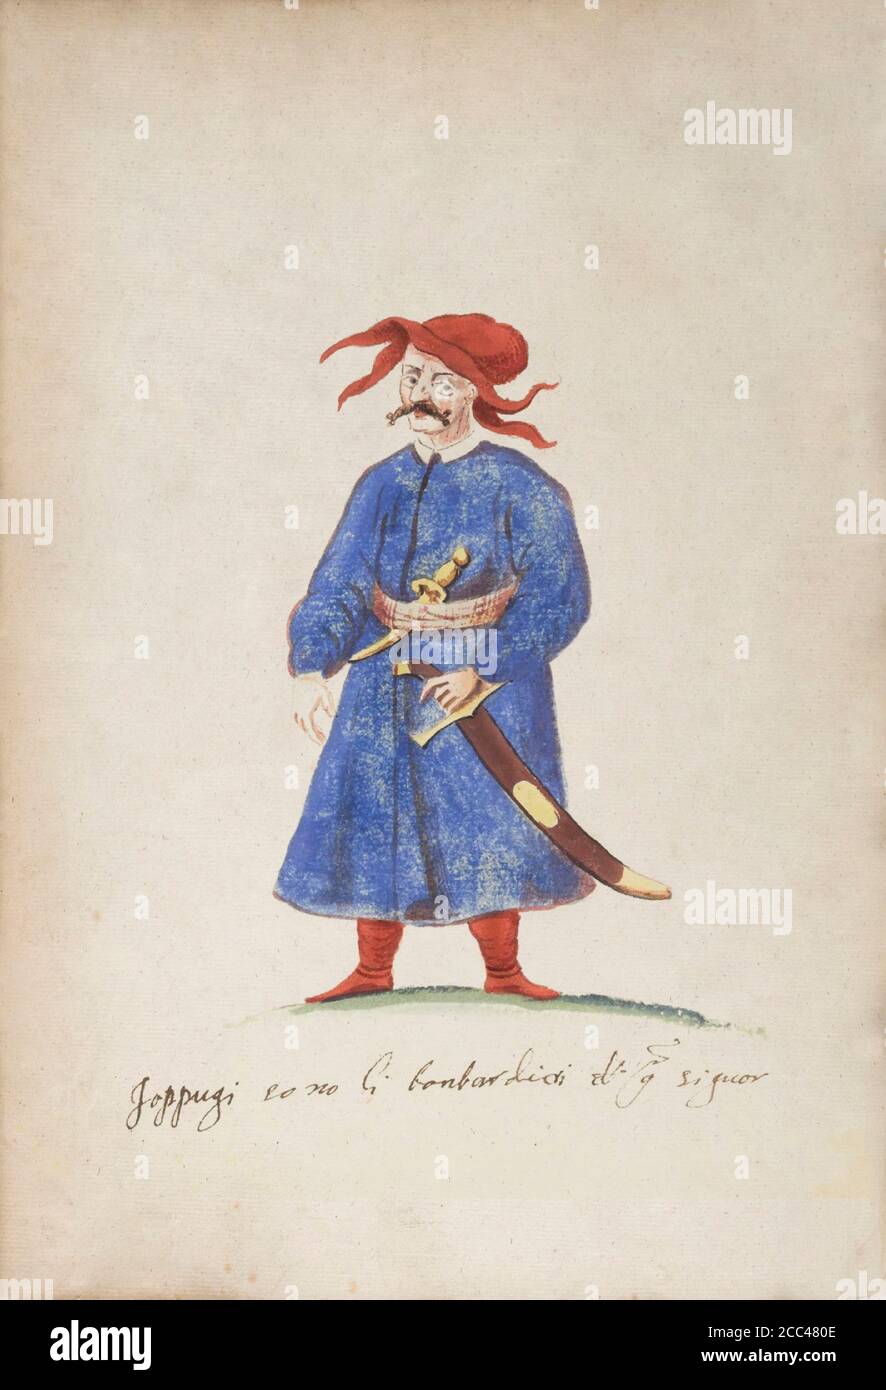 La storia dell'Impero Ottomano. Artiglieryman turco - loppugi. 16 ° secolo Foto Stock